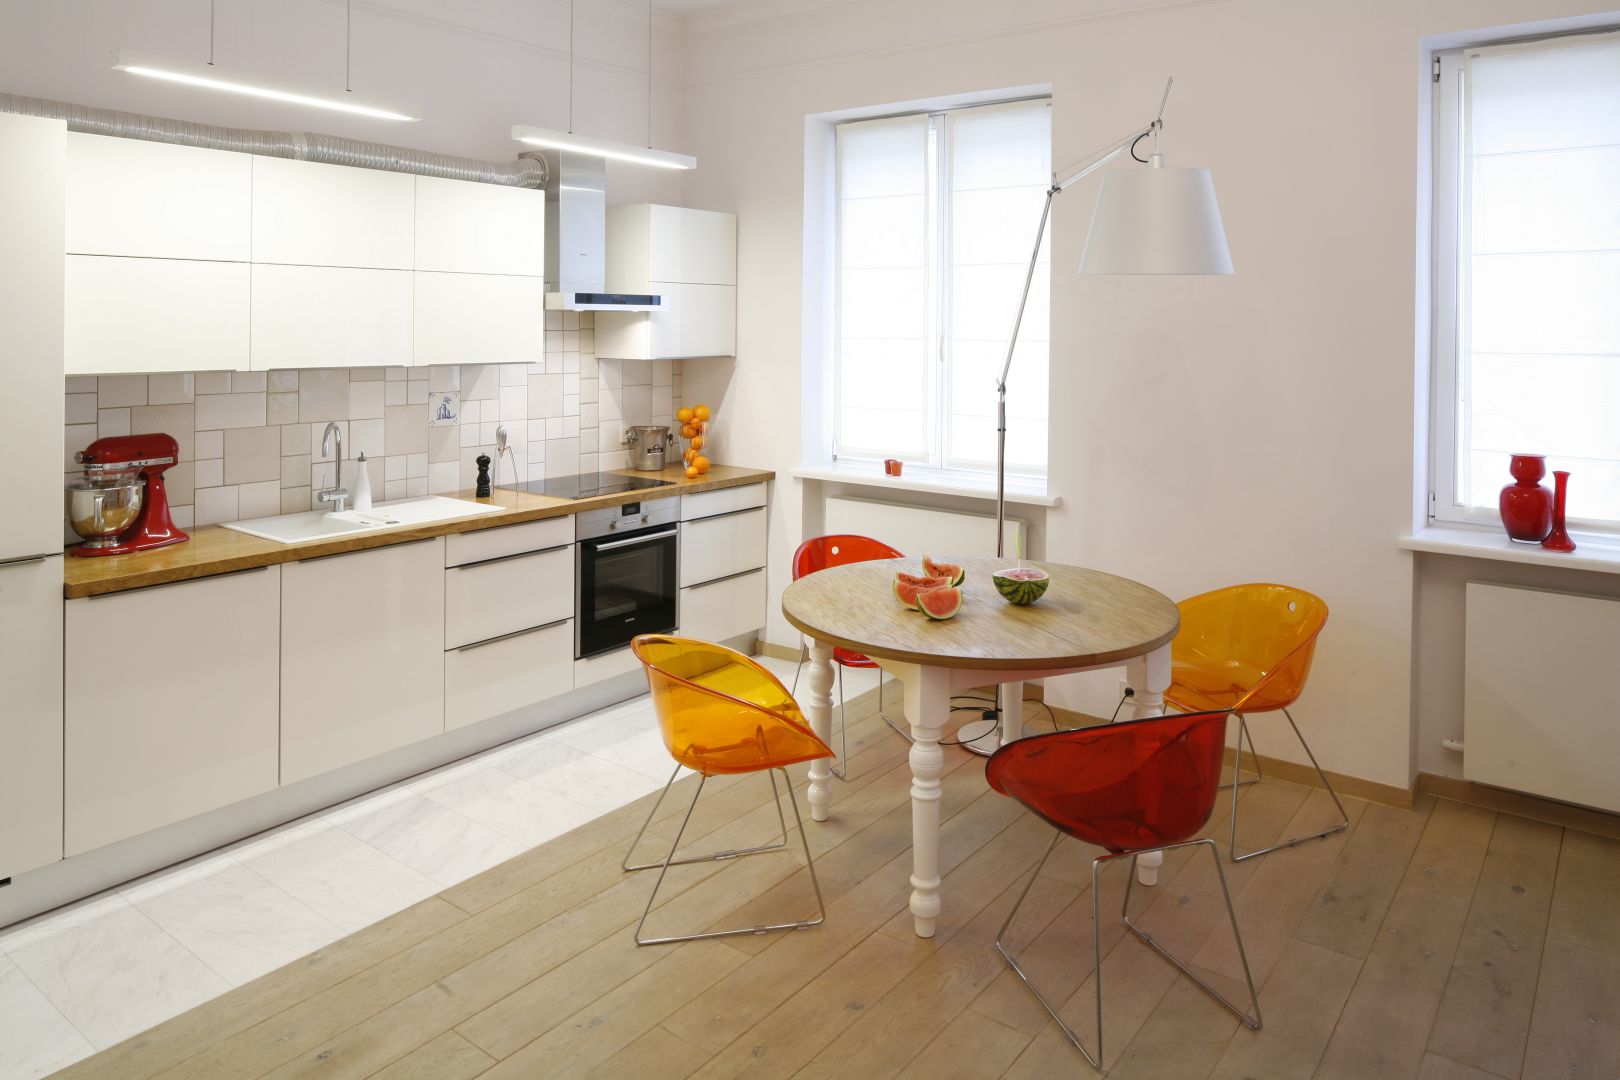 Otwarta kuchnia w białym kolorze jest neutralna dla reszty wnętrza. Aby bardziej ją ożywić, warto przy stole ustawić kolorowe krzesła. Projekt: Agnieszka Żyła Fot. Bartosz Jarosz